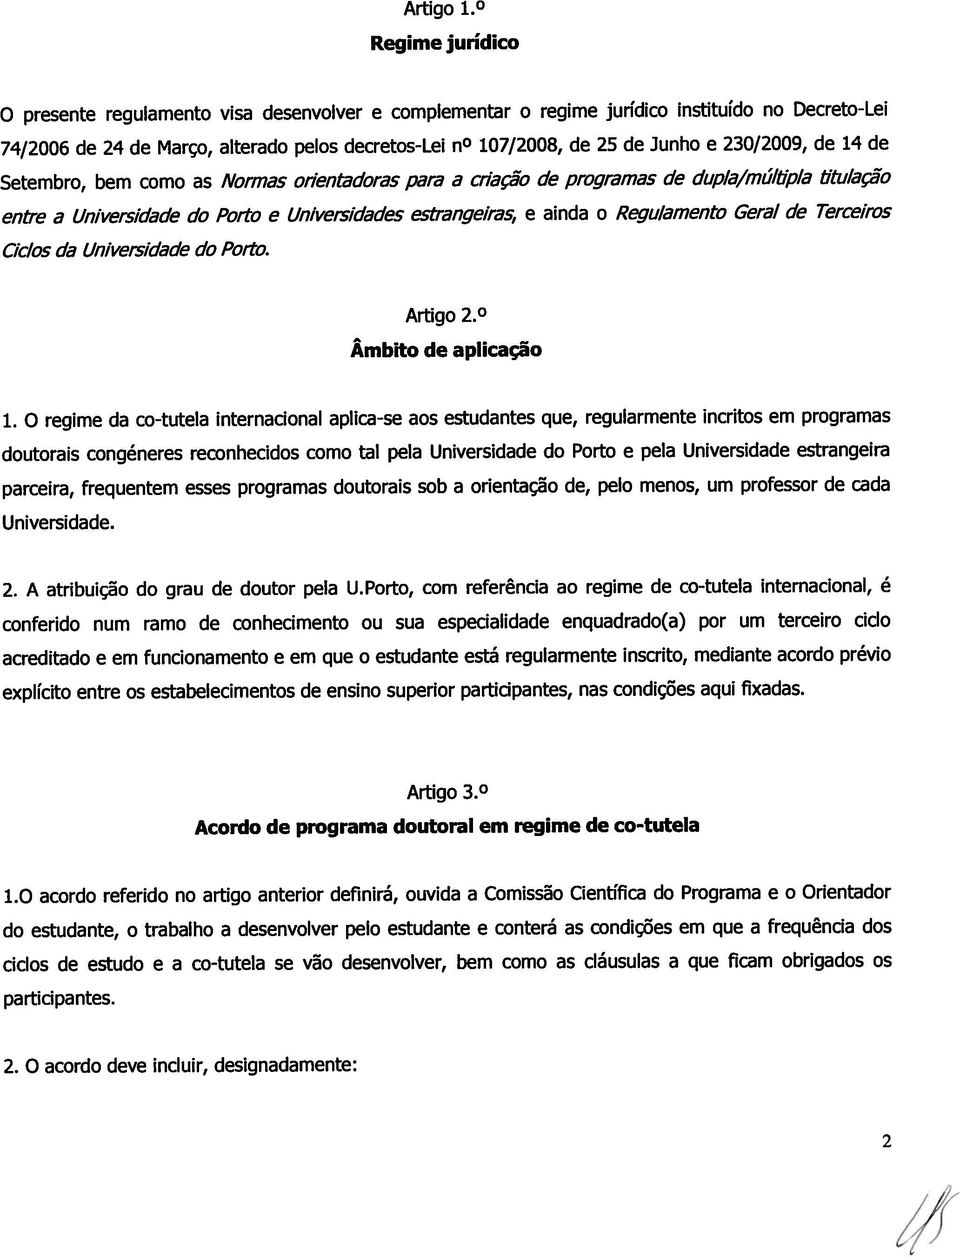 230/2009, de 14 de Setembro, bem como as Normas orientadoras para a criação de programas de dupia/múitiia titulação entre a Universidade do Porto e Universidades estrangeiras e ainda o Regulamento